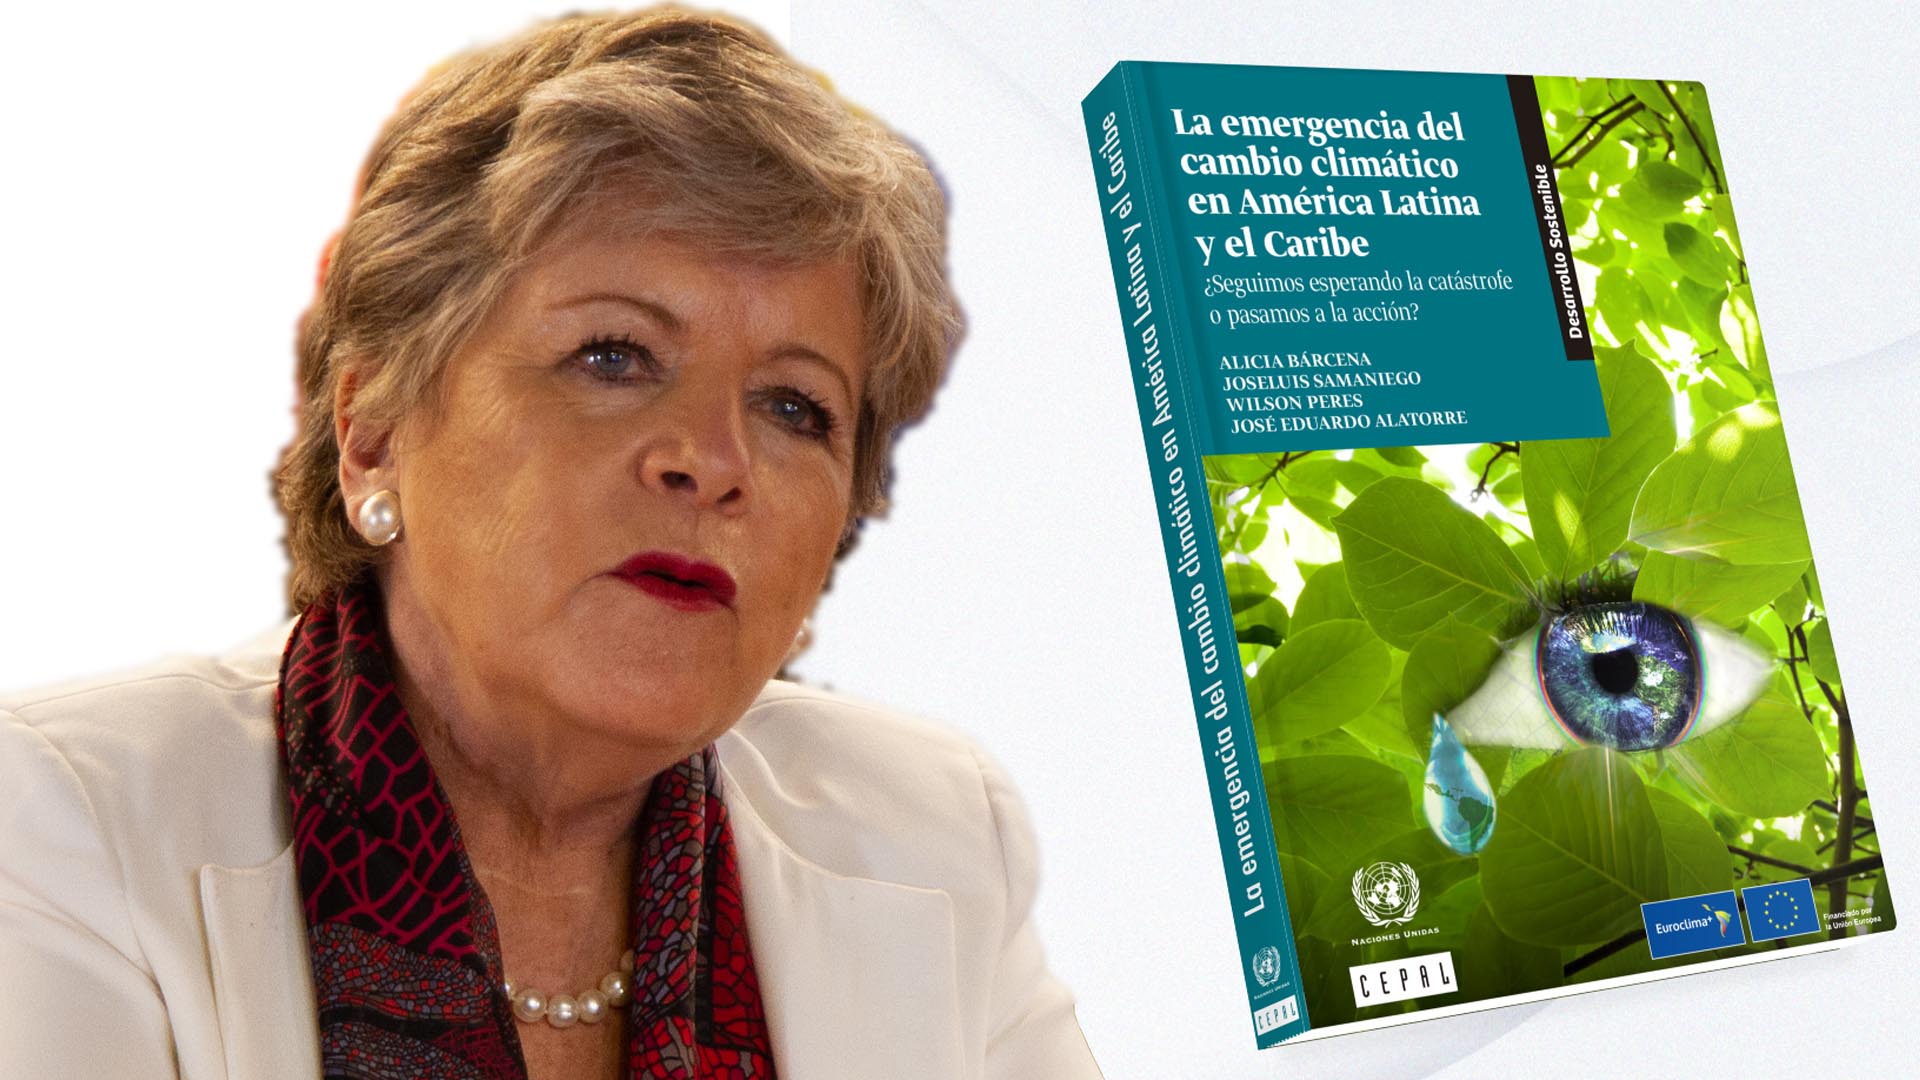 Imagen de Alicia Bárcena, Secretaria Ejecutiva de la #CEPAL y la portada del documento.